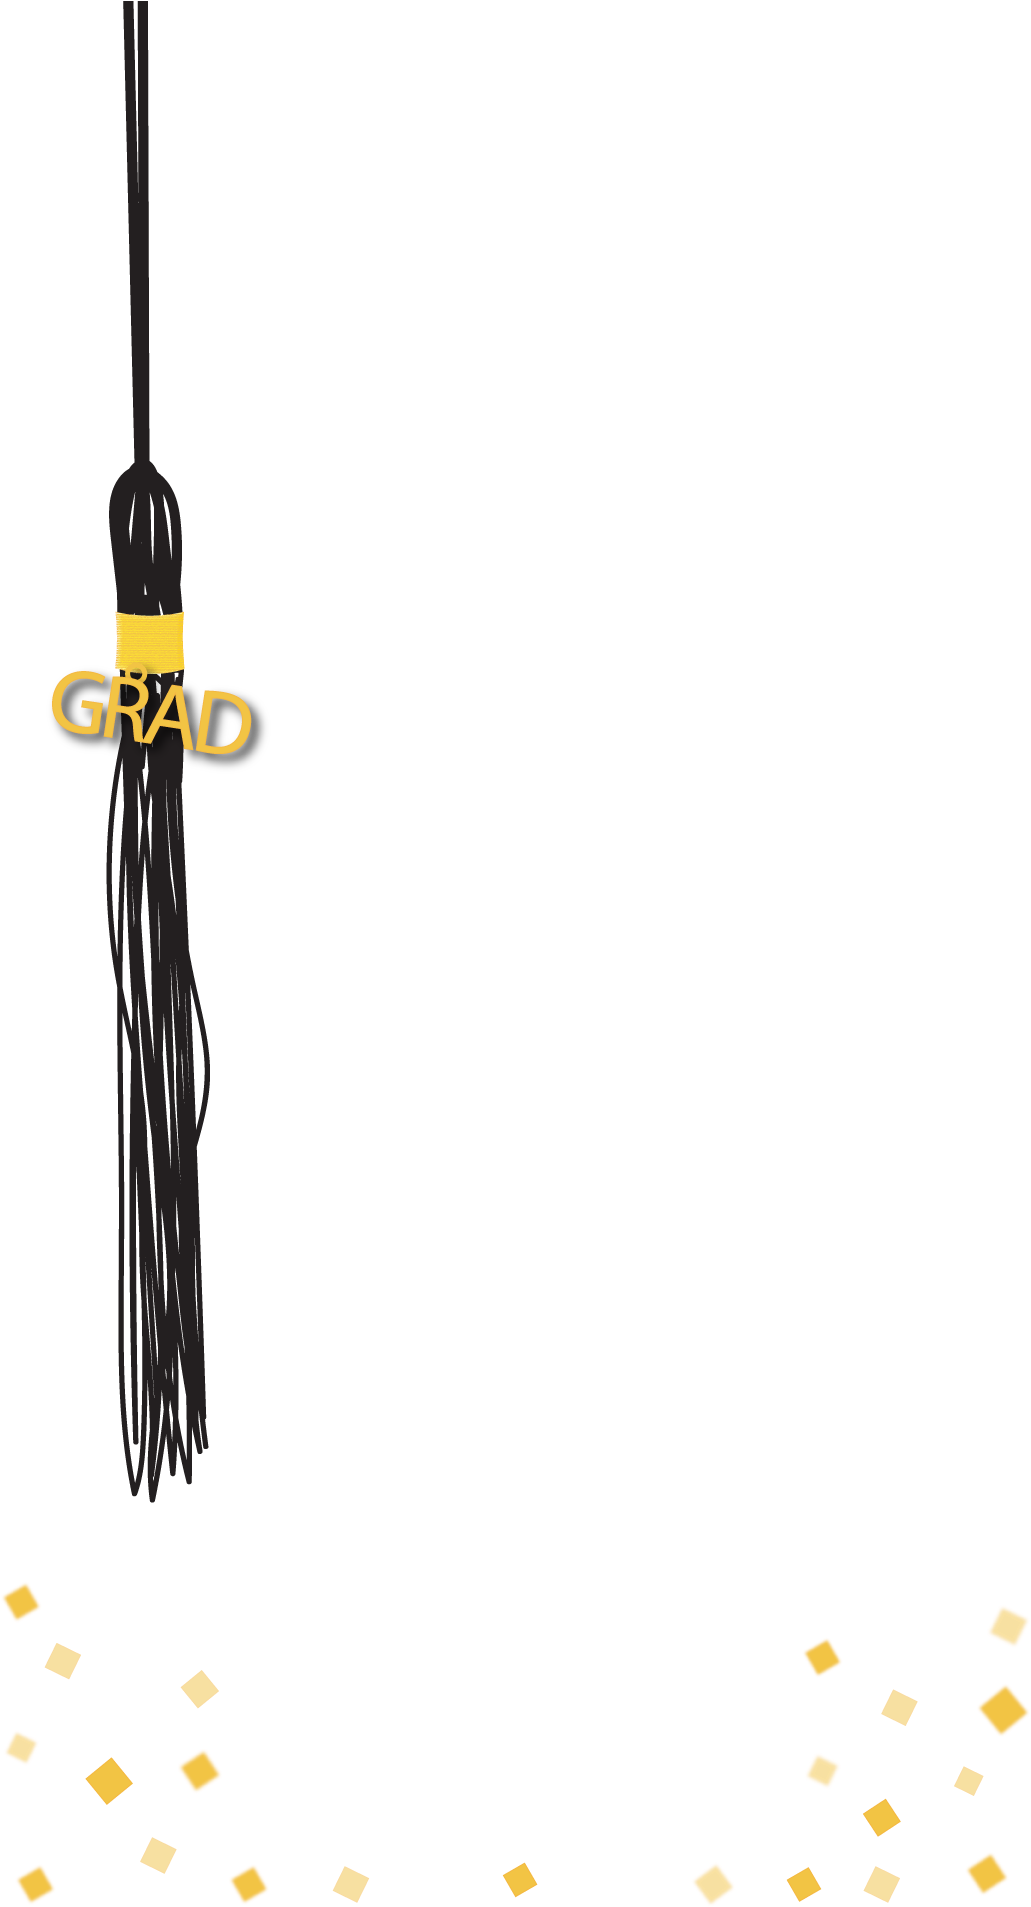 نتيجة بحث الصور عن Graduation Geofilter‏ - Graduation Snapchat Filter Free (1080x1920)